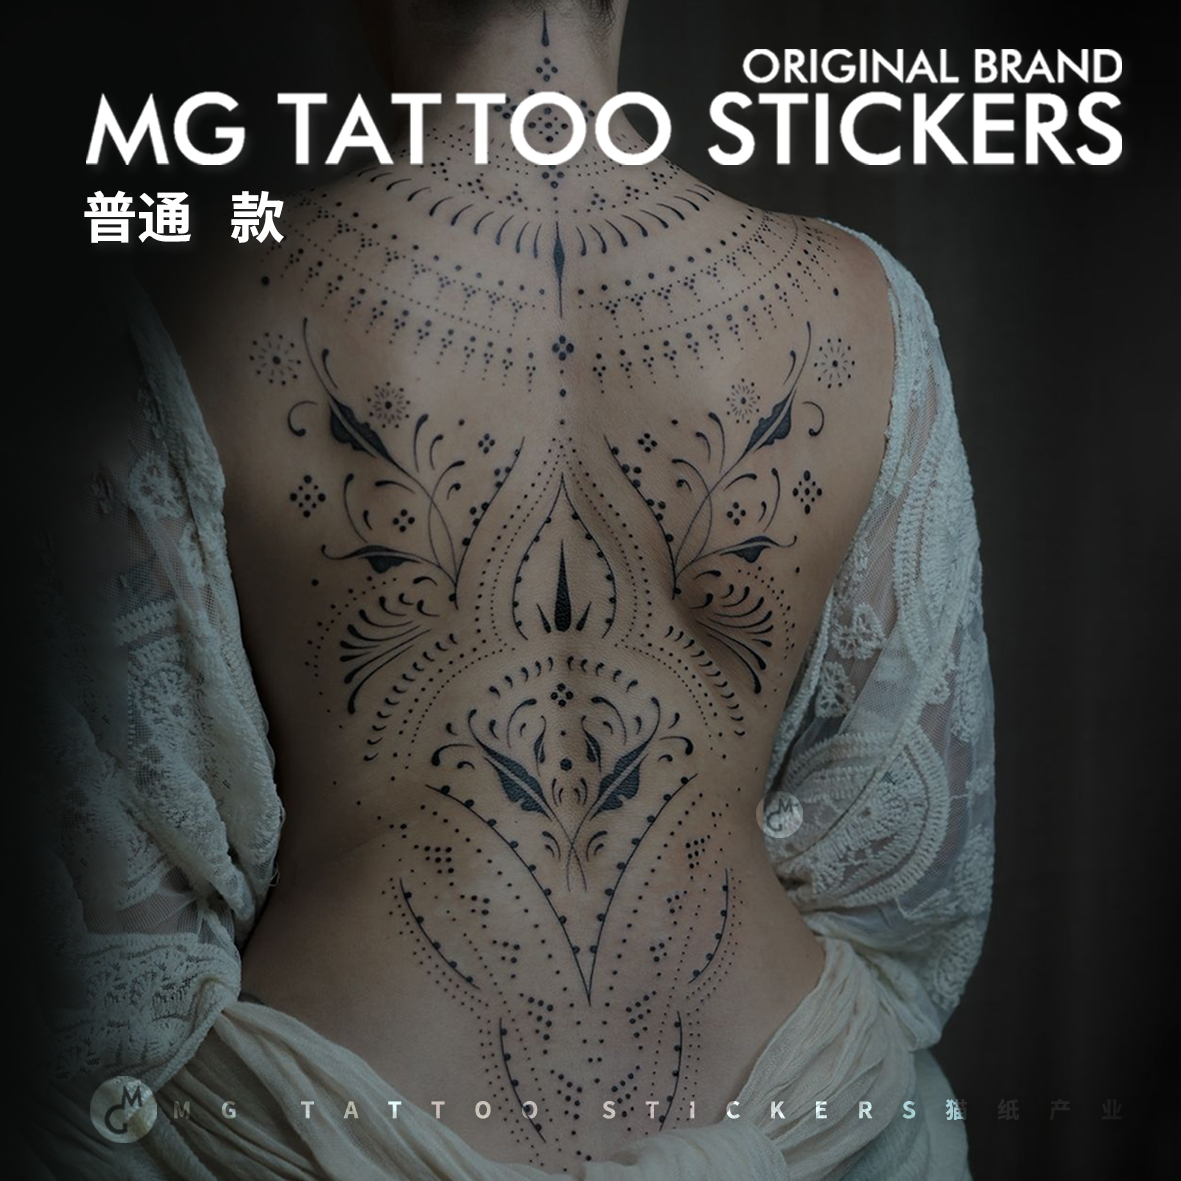 MG tattoo 传语者 异域唯美繁花图腾满背度假旅行美体浪漫纹身贴